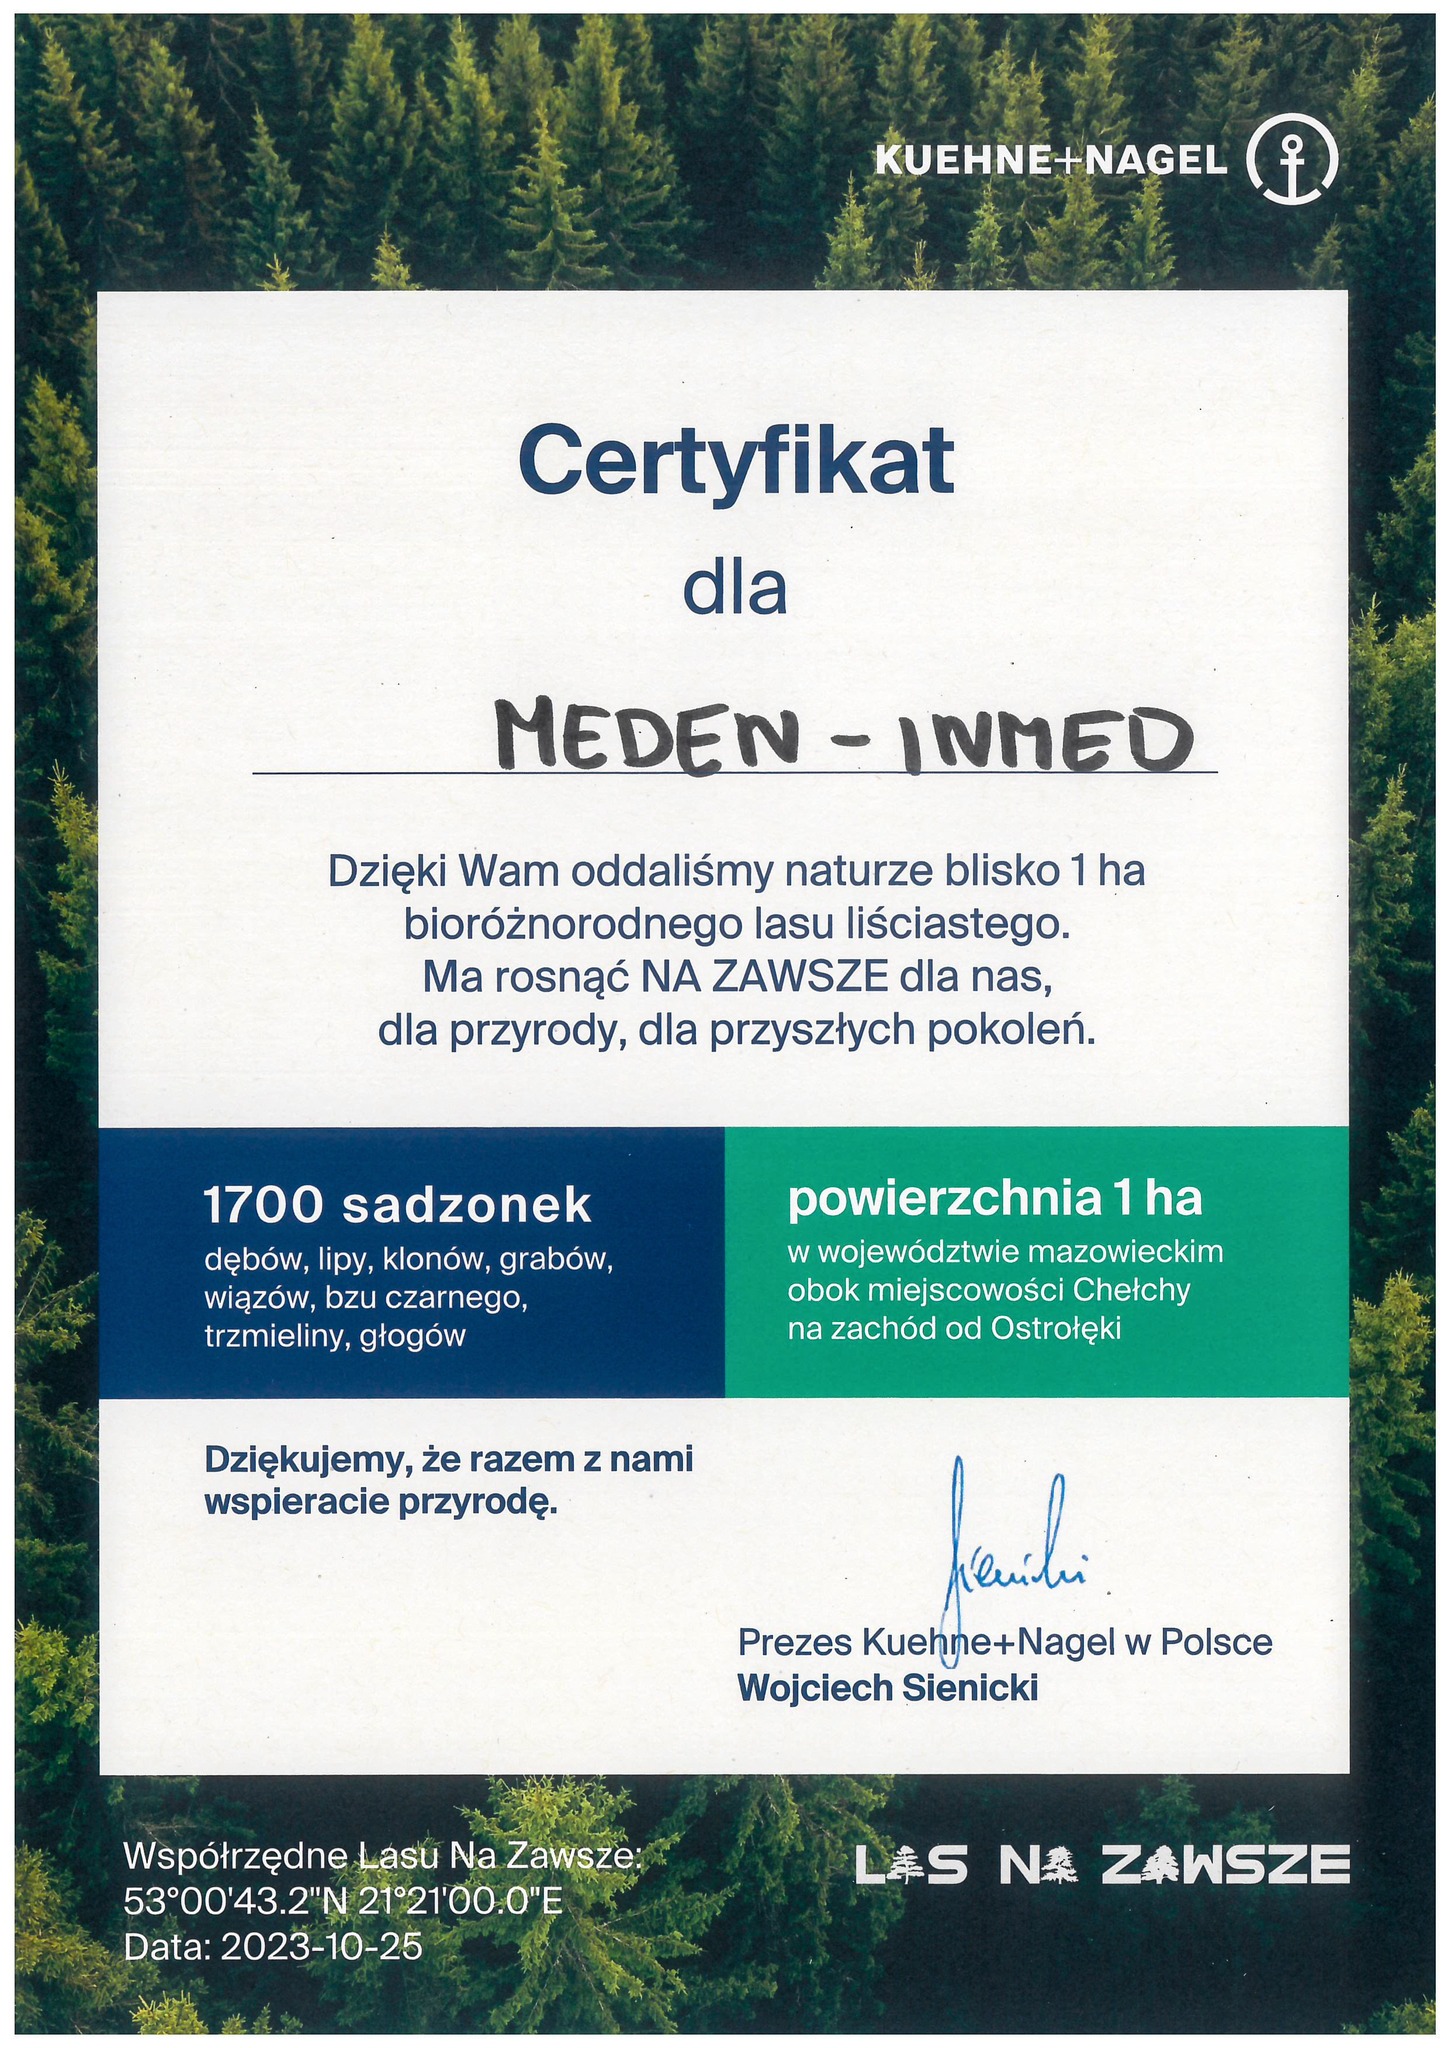 Certificate Kuehne+Nagel for Meden-Inmed